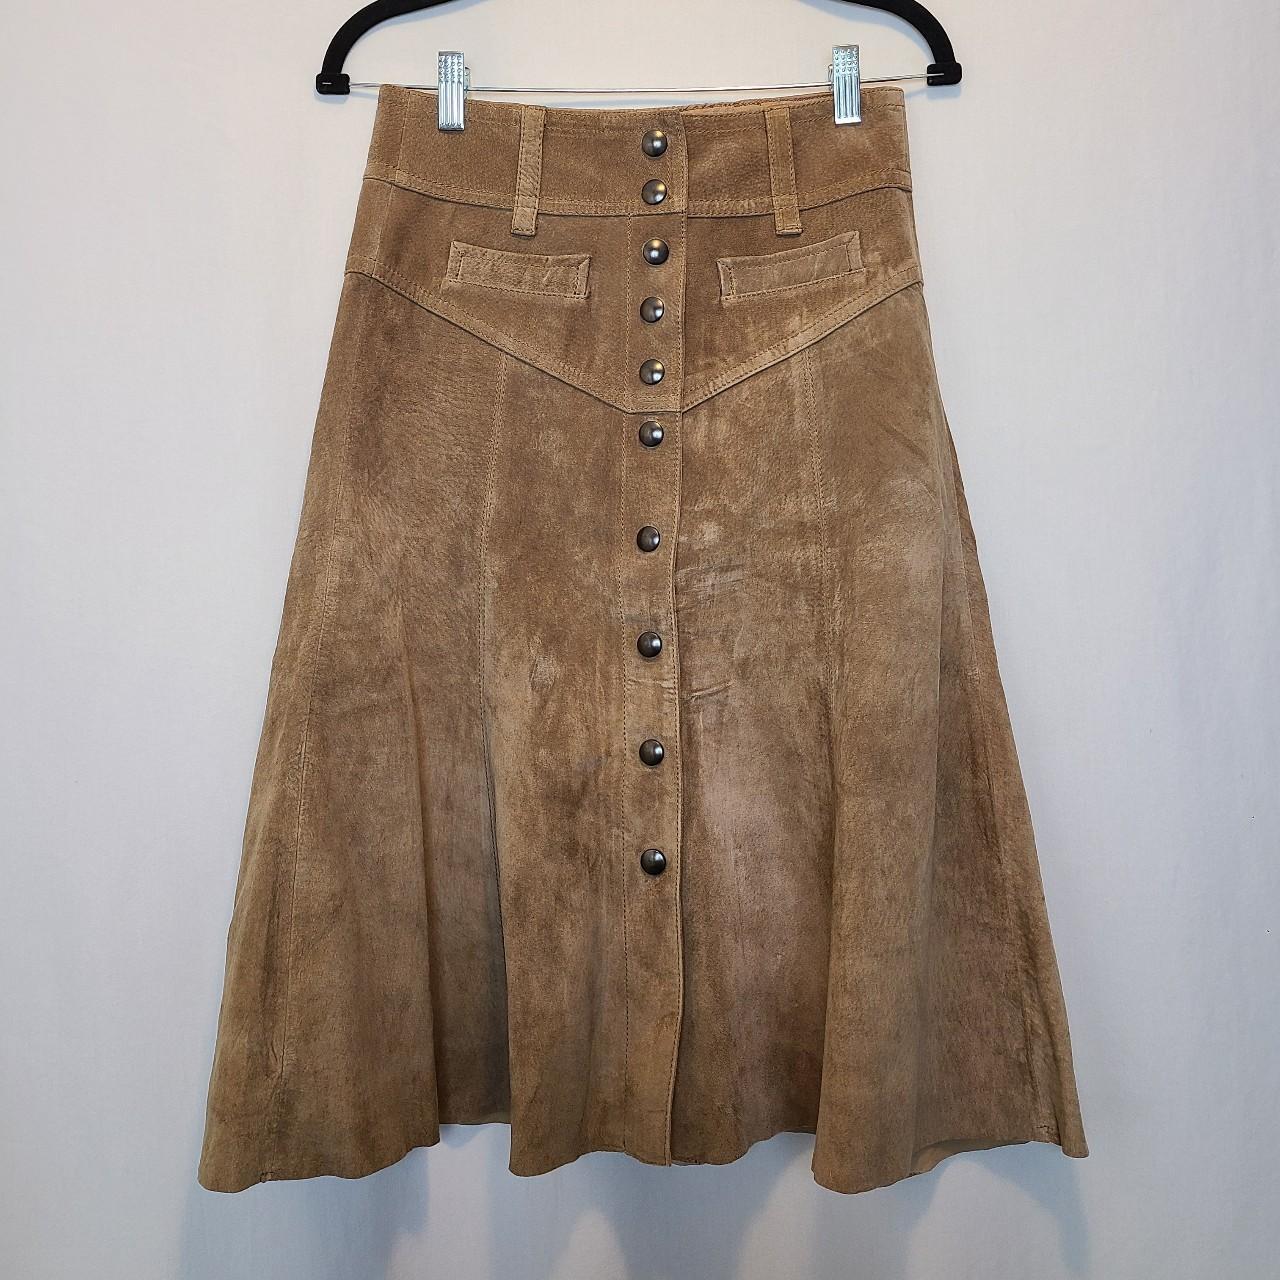 Vintage brown leather skirt by Hallhuber. Size 34.... - Depop